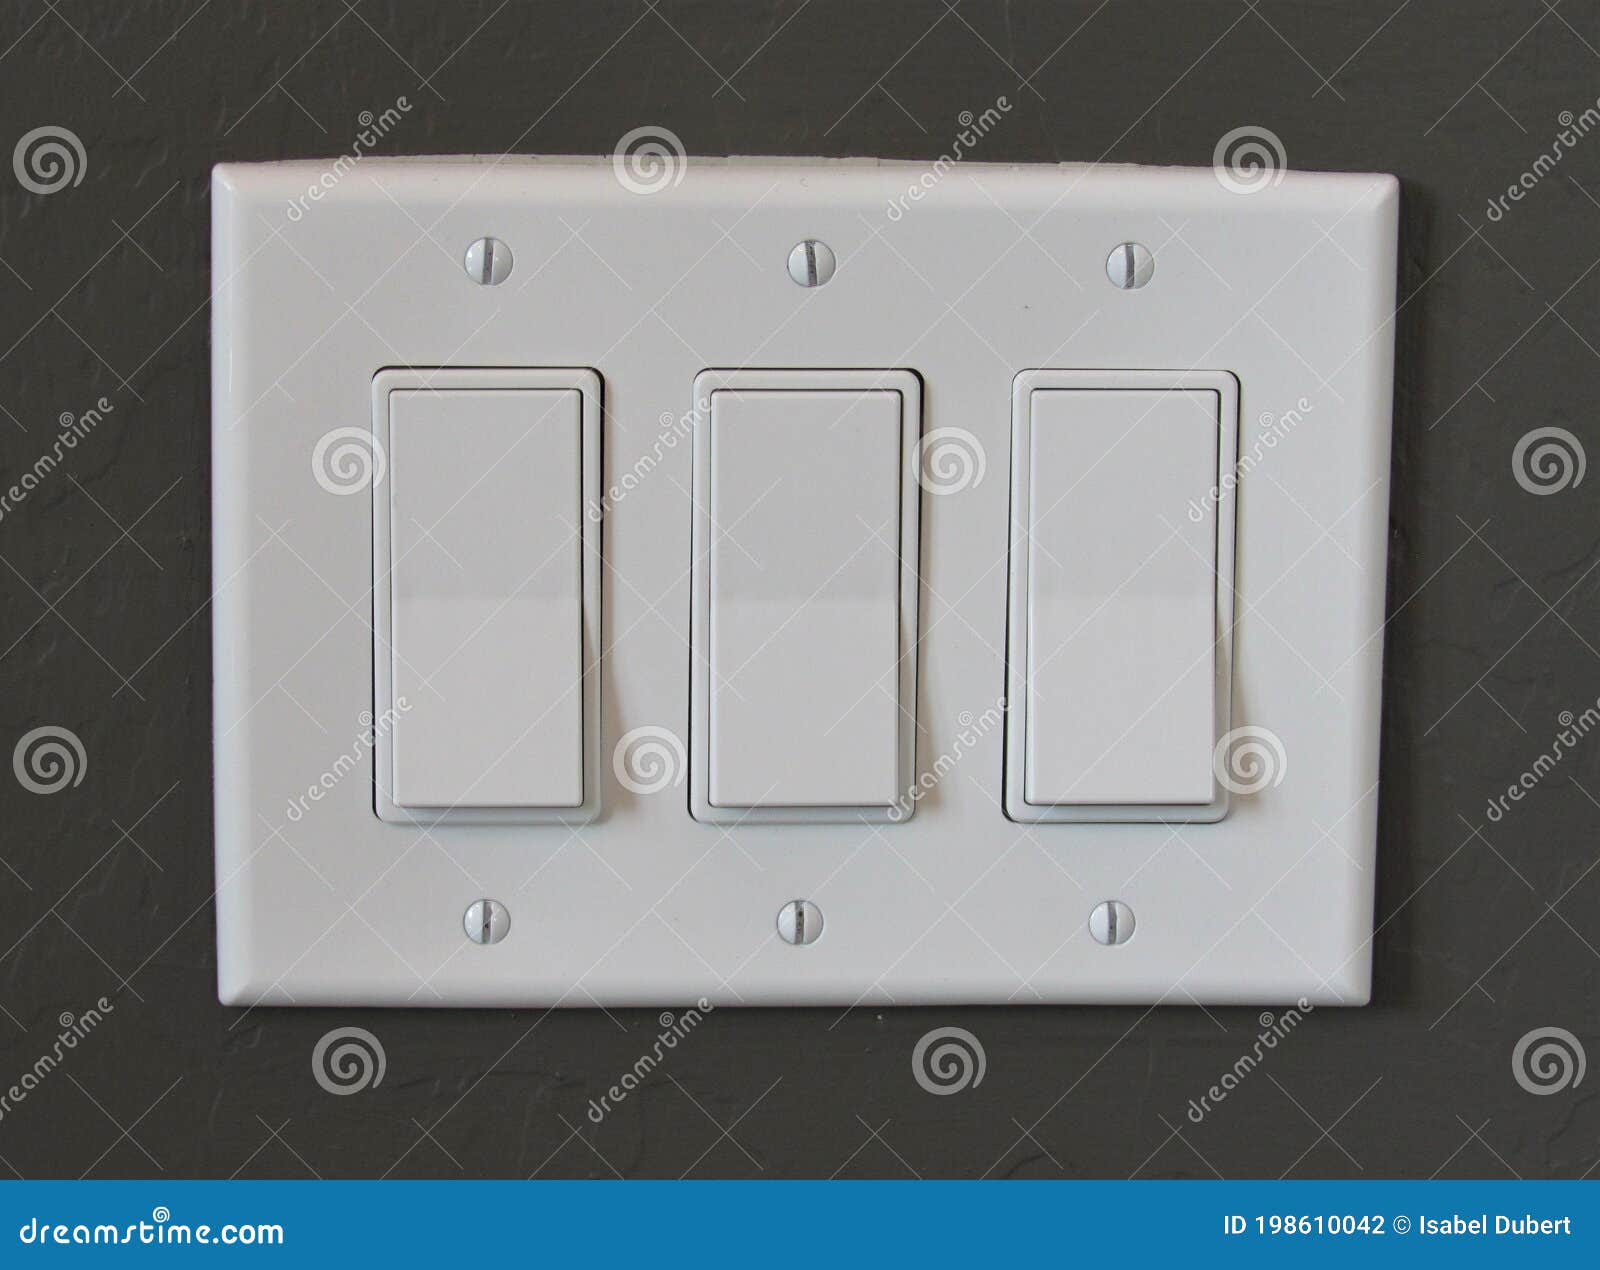 Interruptores Eléctricos Modernos En Una Pared Blanca De Azulejos Fotos,  retratos, imágenes y fotografía de archivo libres de derecho. Image 86680598